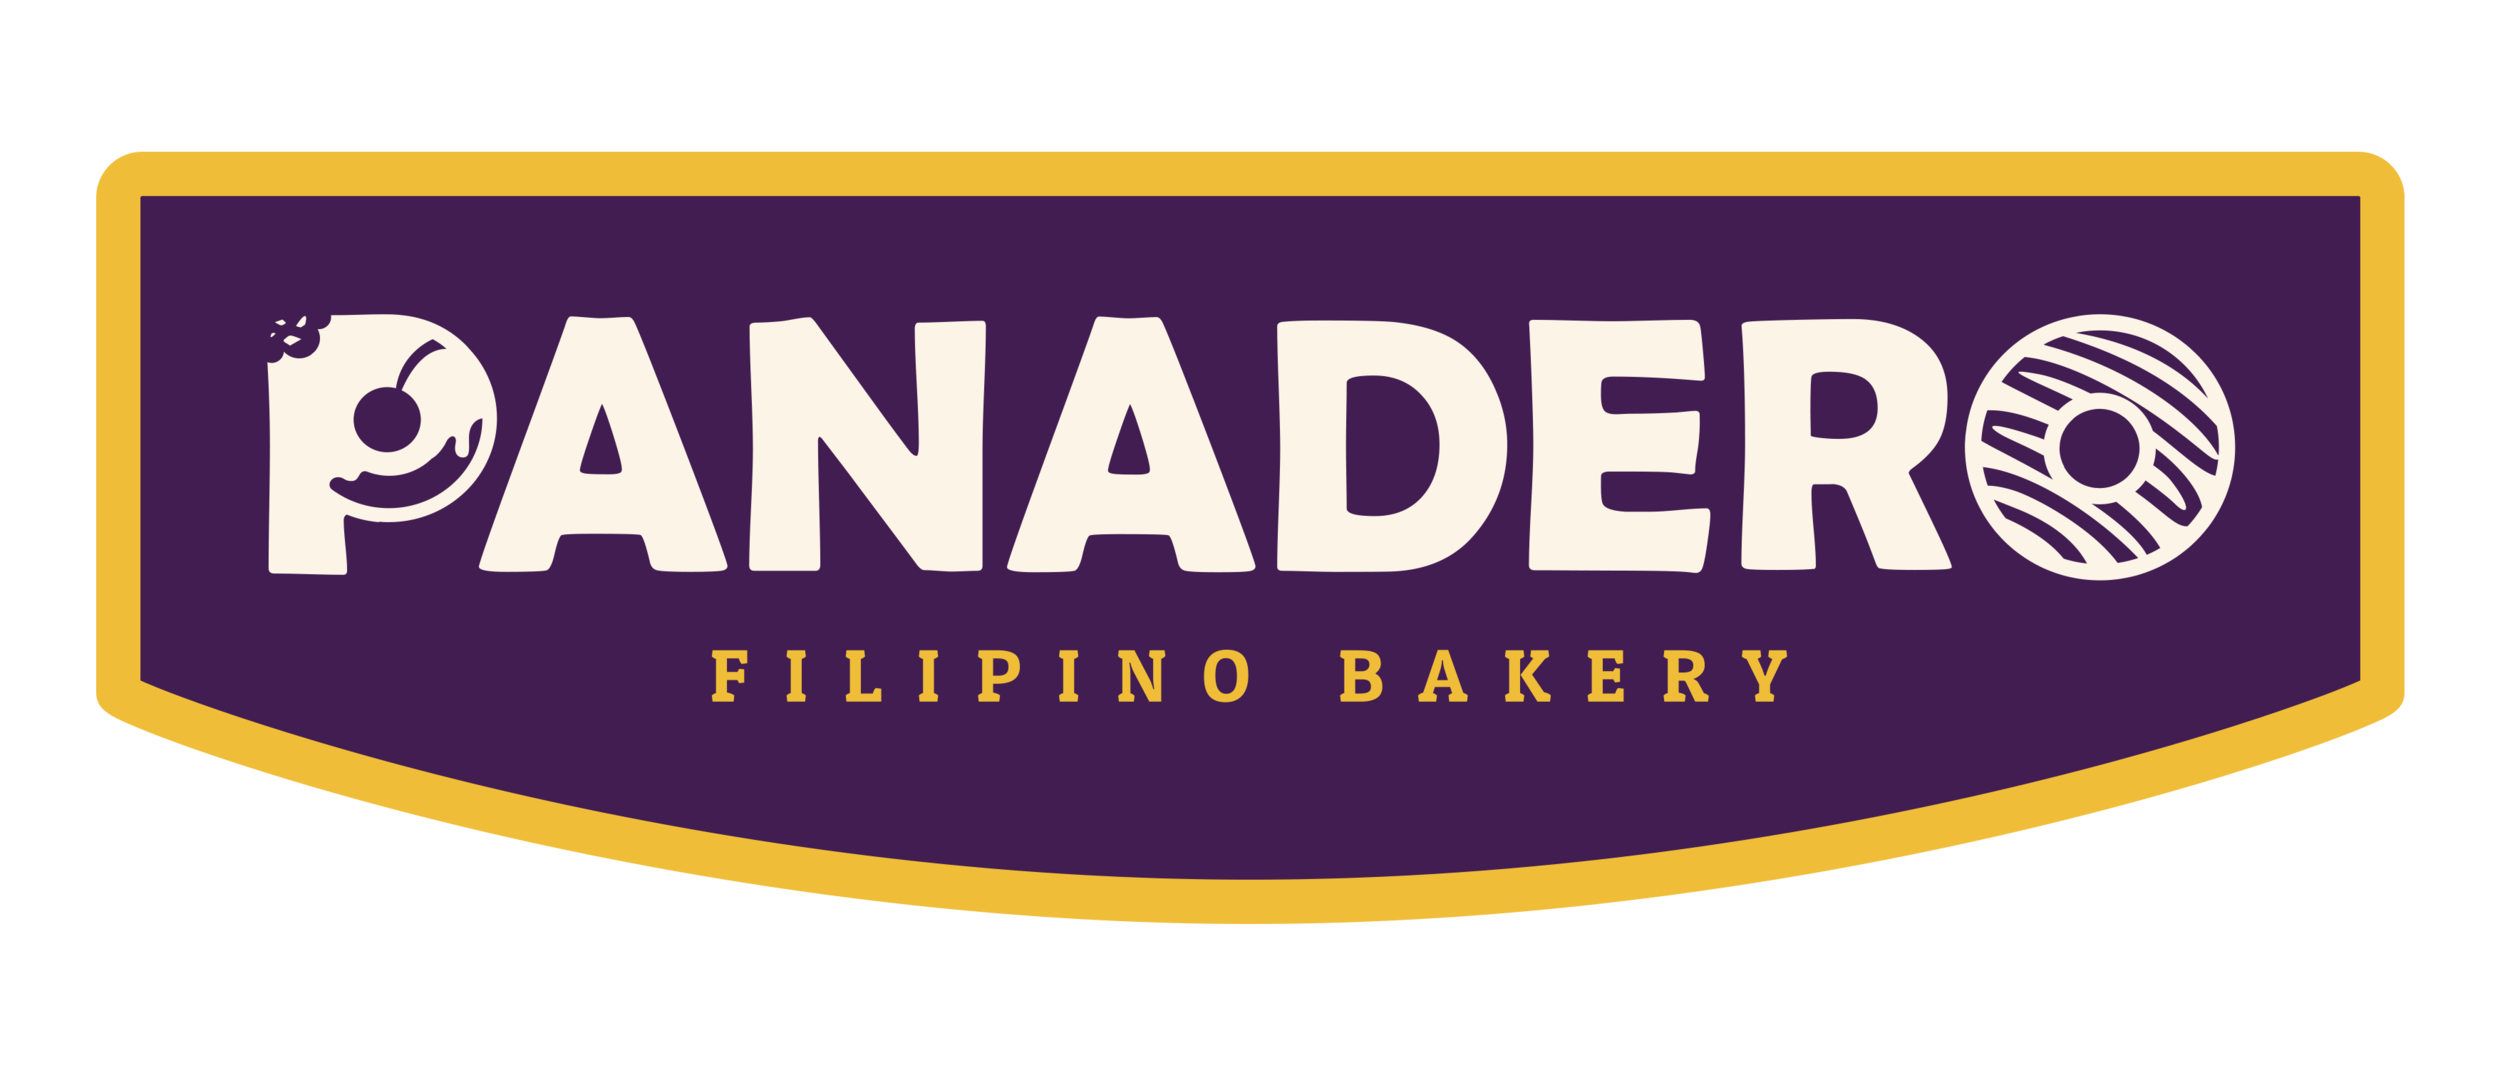  Panadero Filipino Bakery